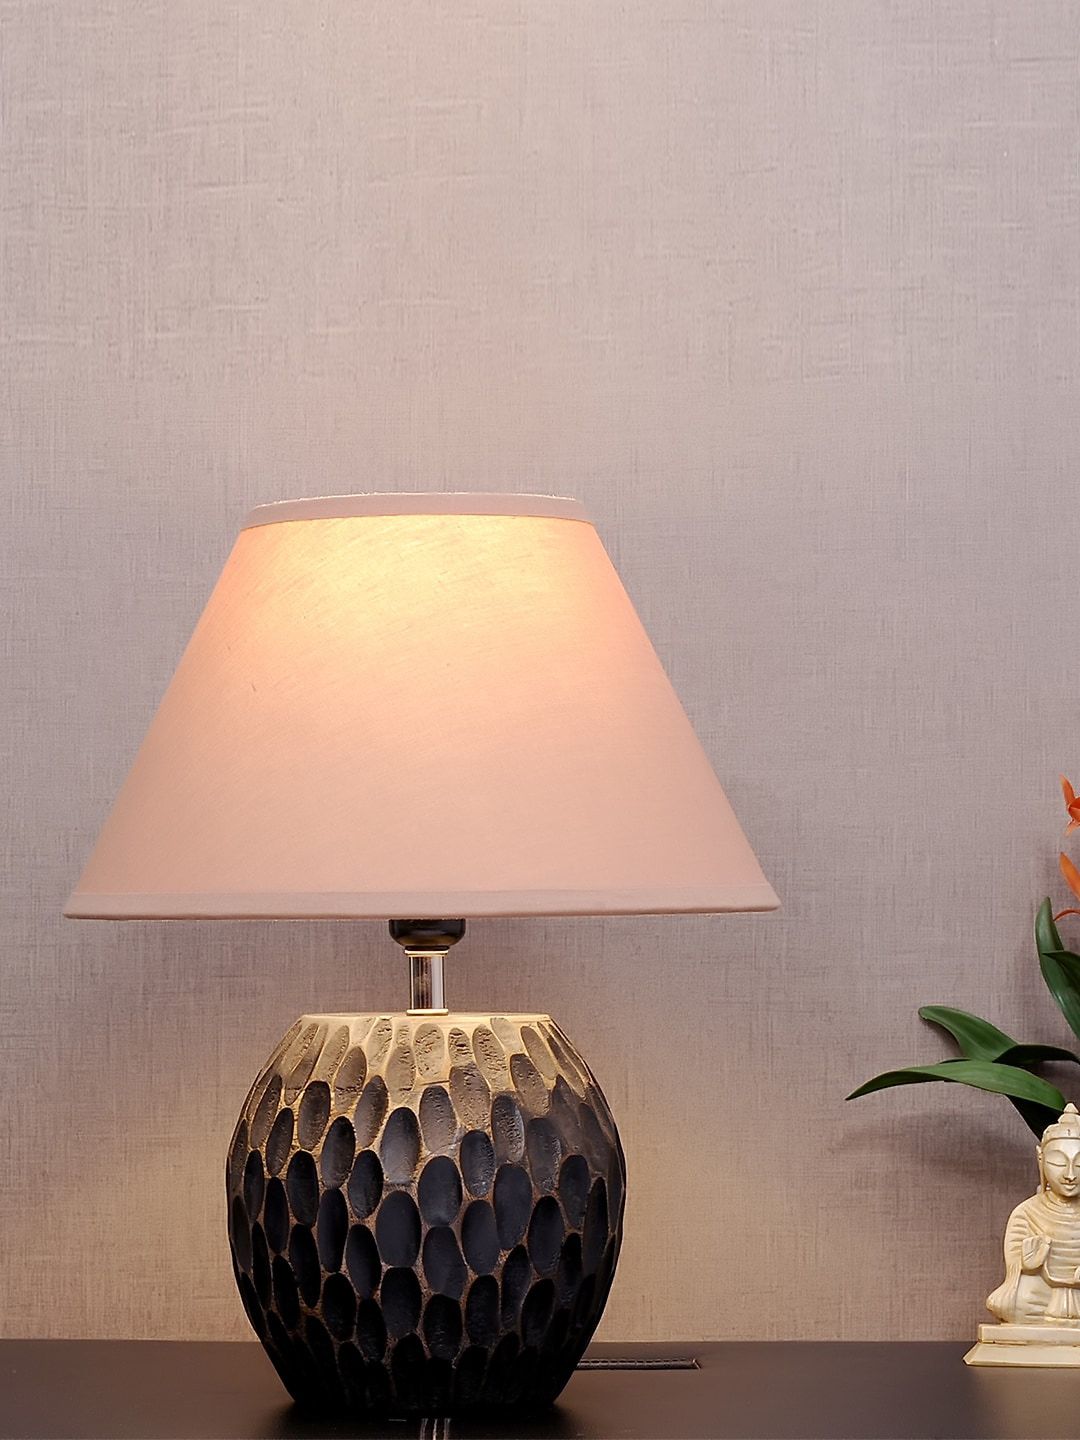 THE LIGHT STORE Black Self-Design Frustum Table Lamp Price in India